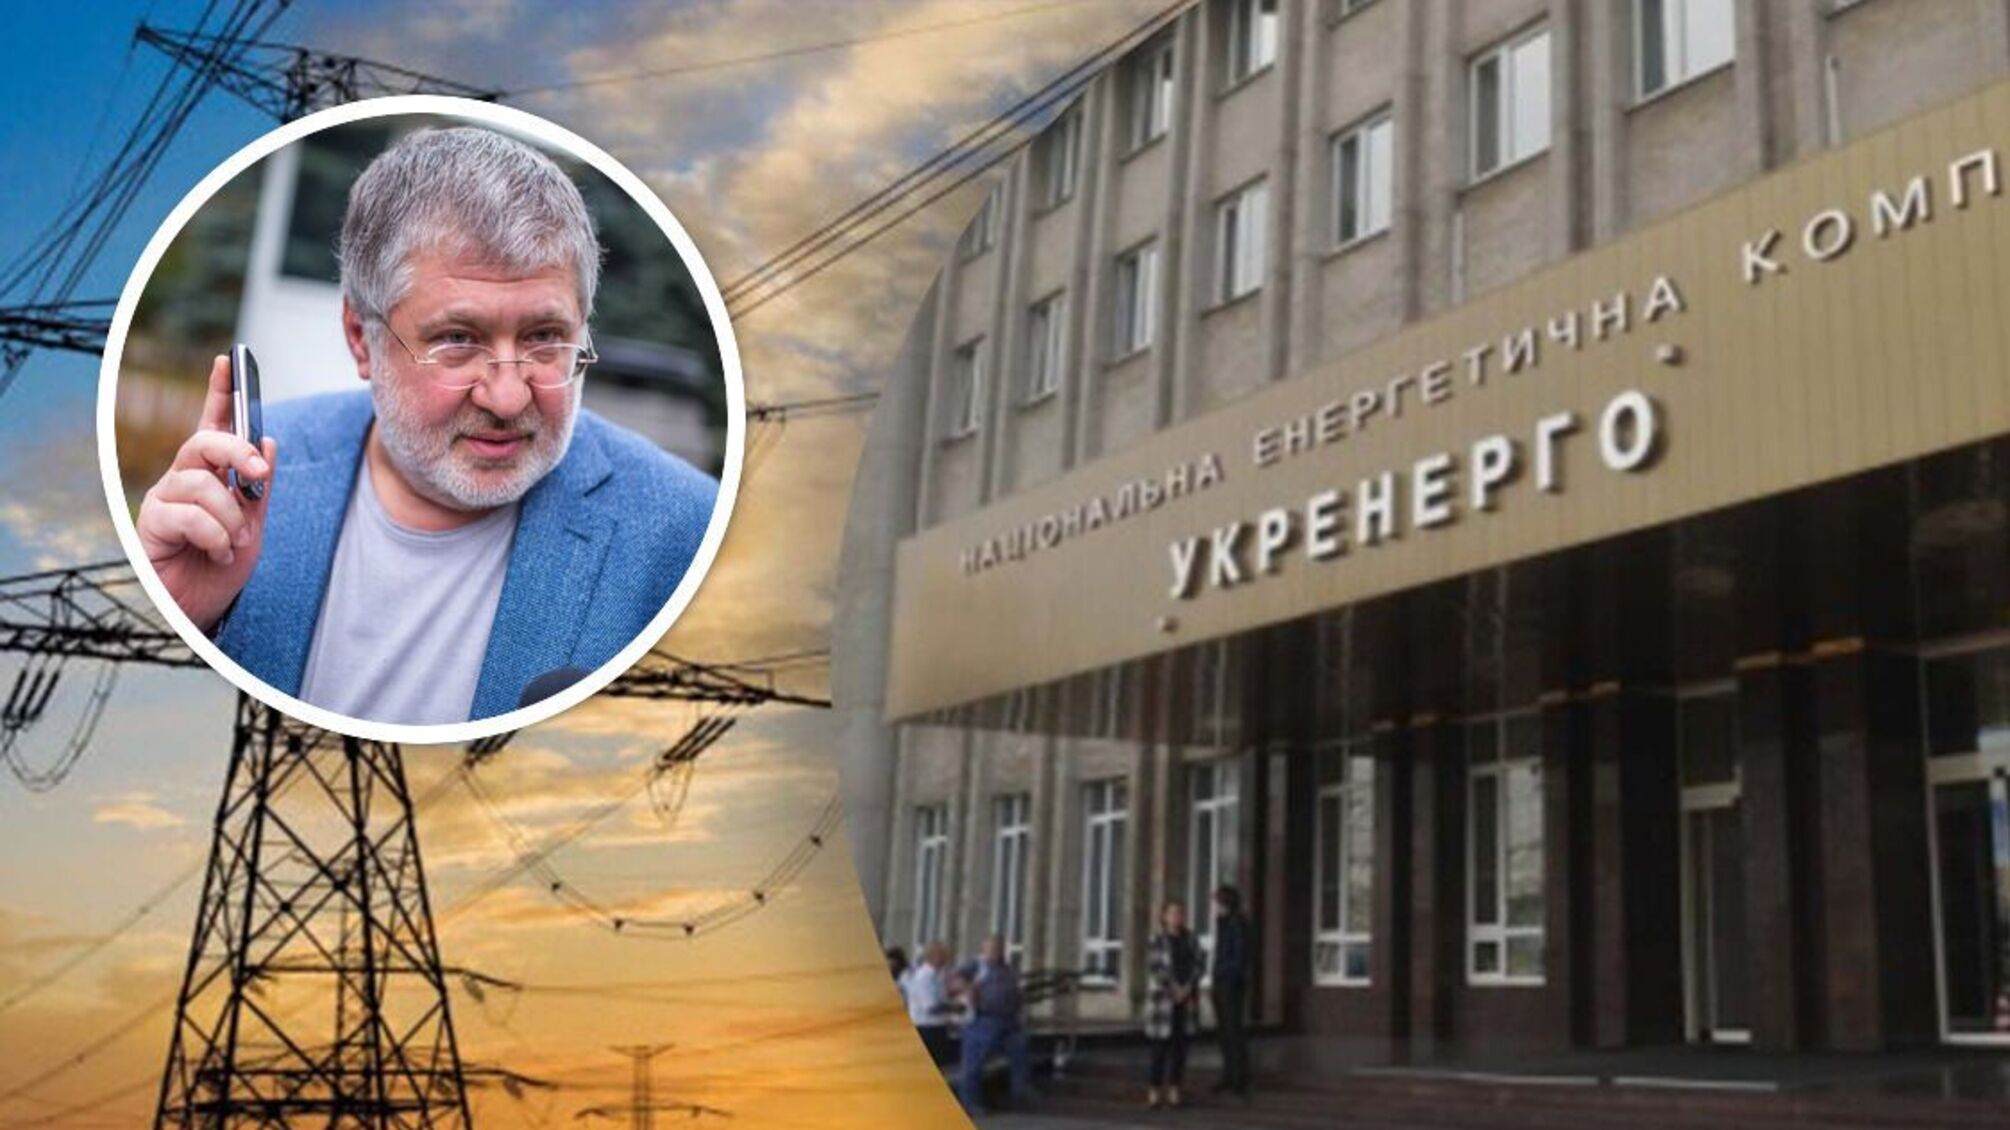 НЭК 'Укрэнерго' заключила соглашение на 1,4 млрд с 'дефолтной' фирмой Коломойского: дело расследует НАБУ